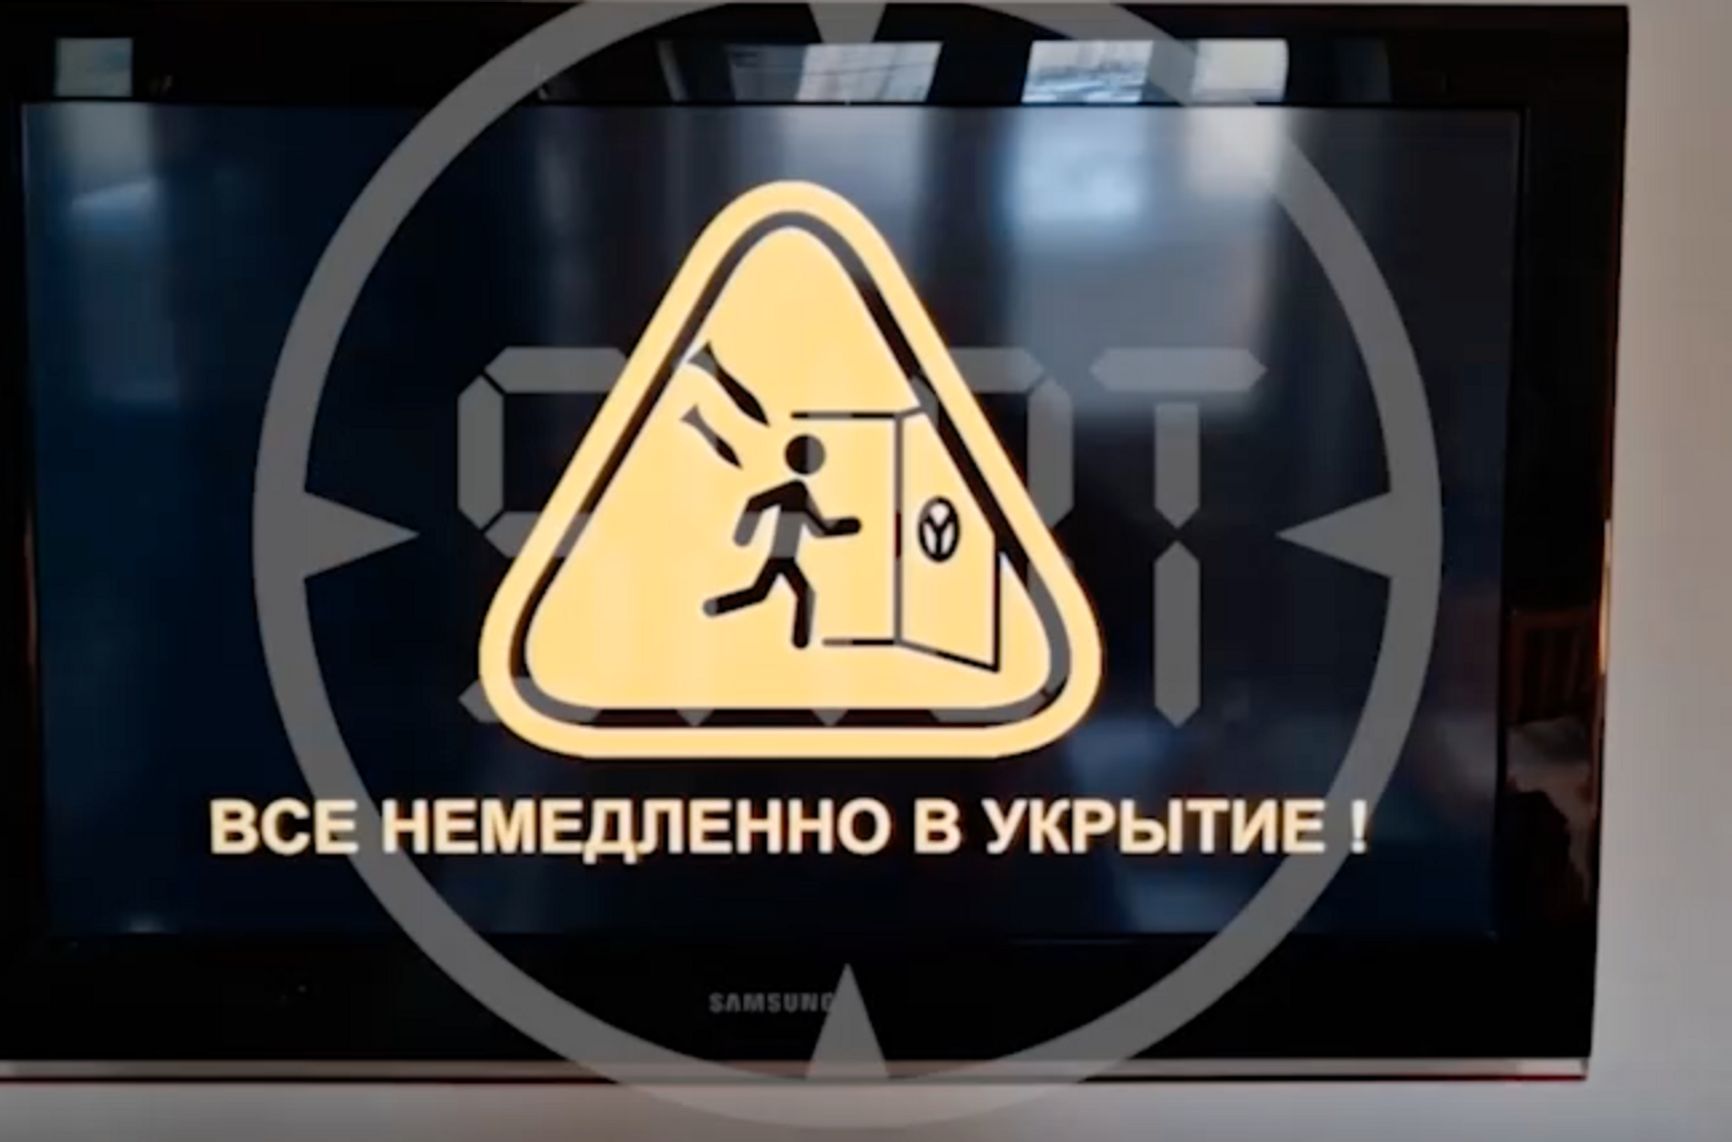 В нескольких регионах России и Крыму объявили воздушную тревогу на радио и телеканалах. В МЧС заявили о взломе серверов